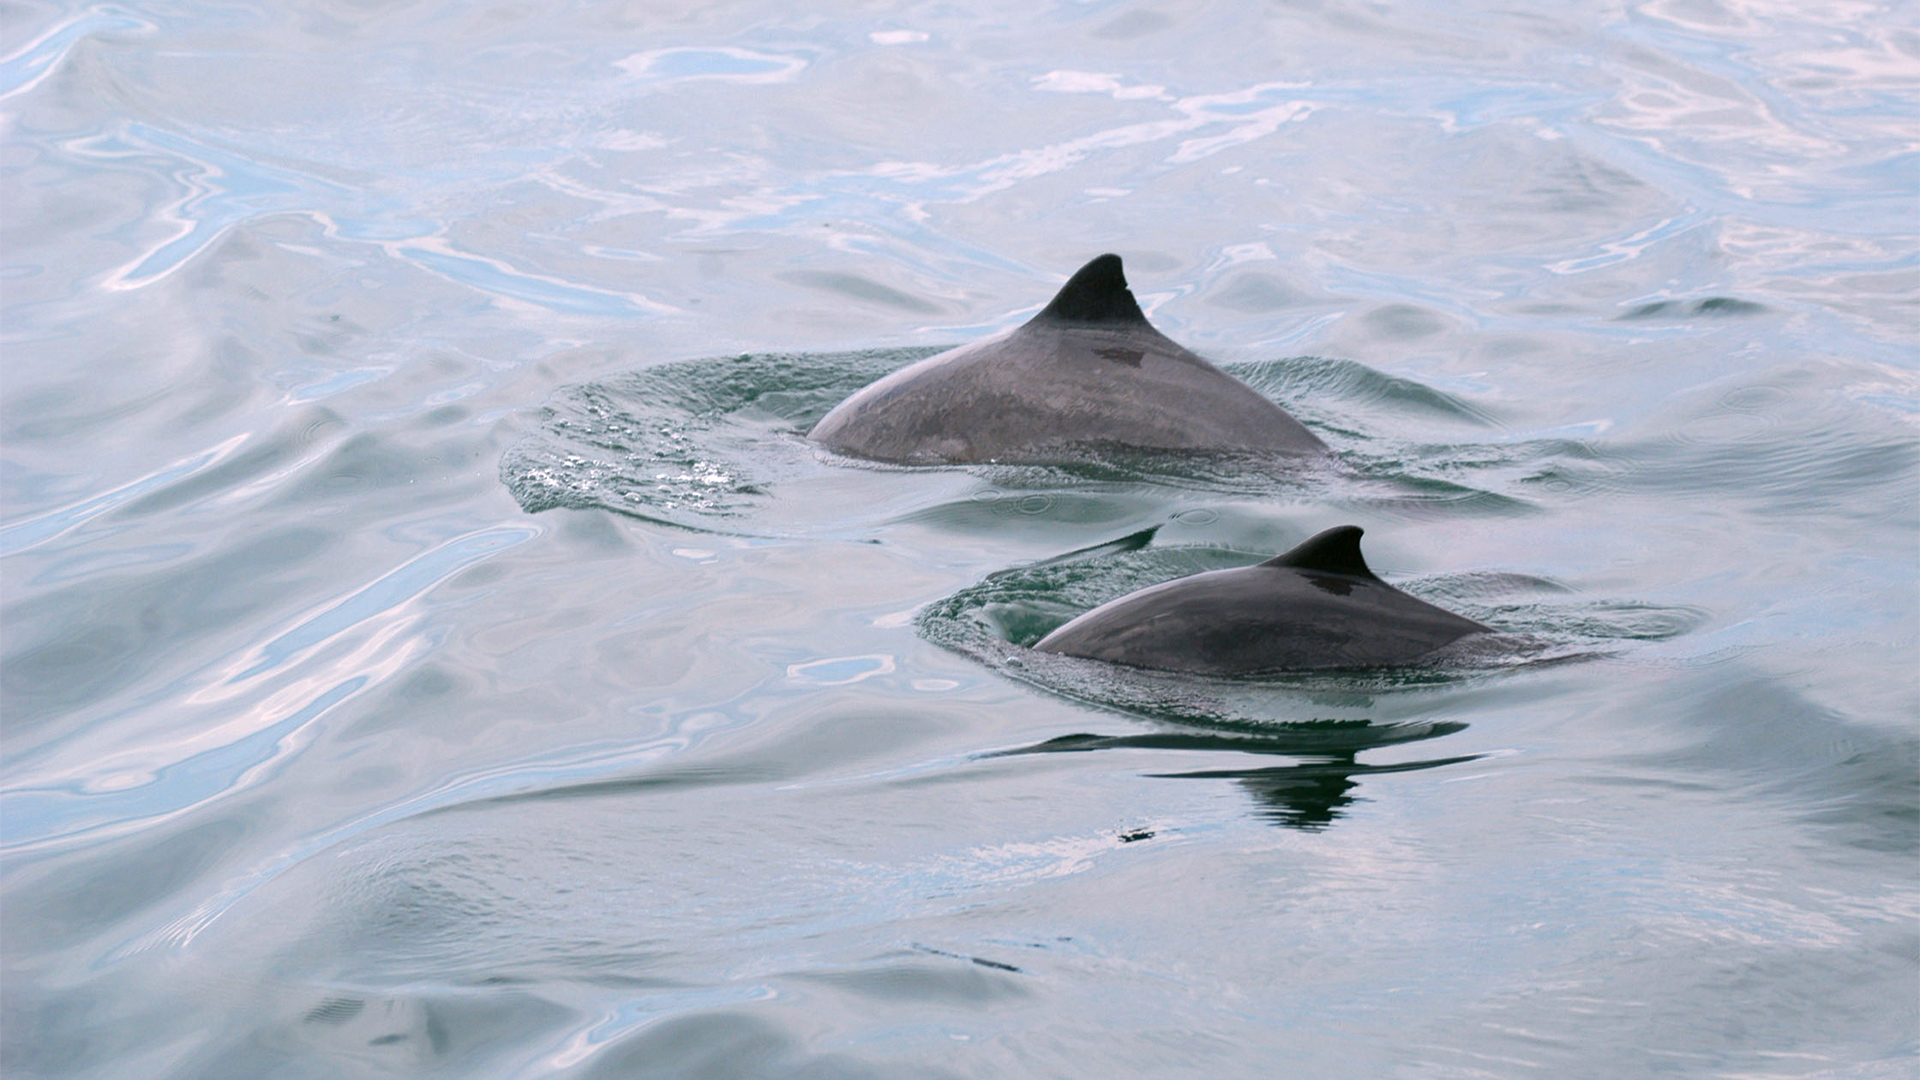 Deux dos de marsouins avec leur nageoire triangulaire sont visibles à la surface de l’eau. Le marsouin en avant-plan est plus petit que l’autre.